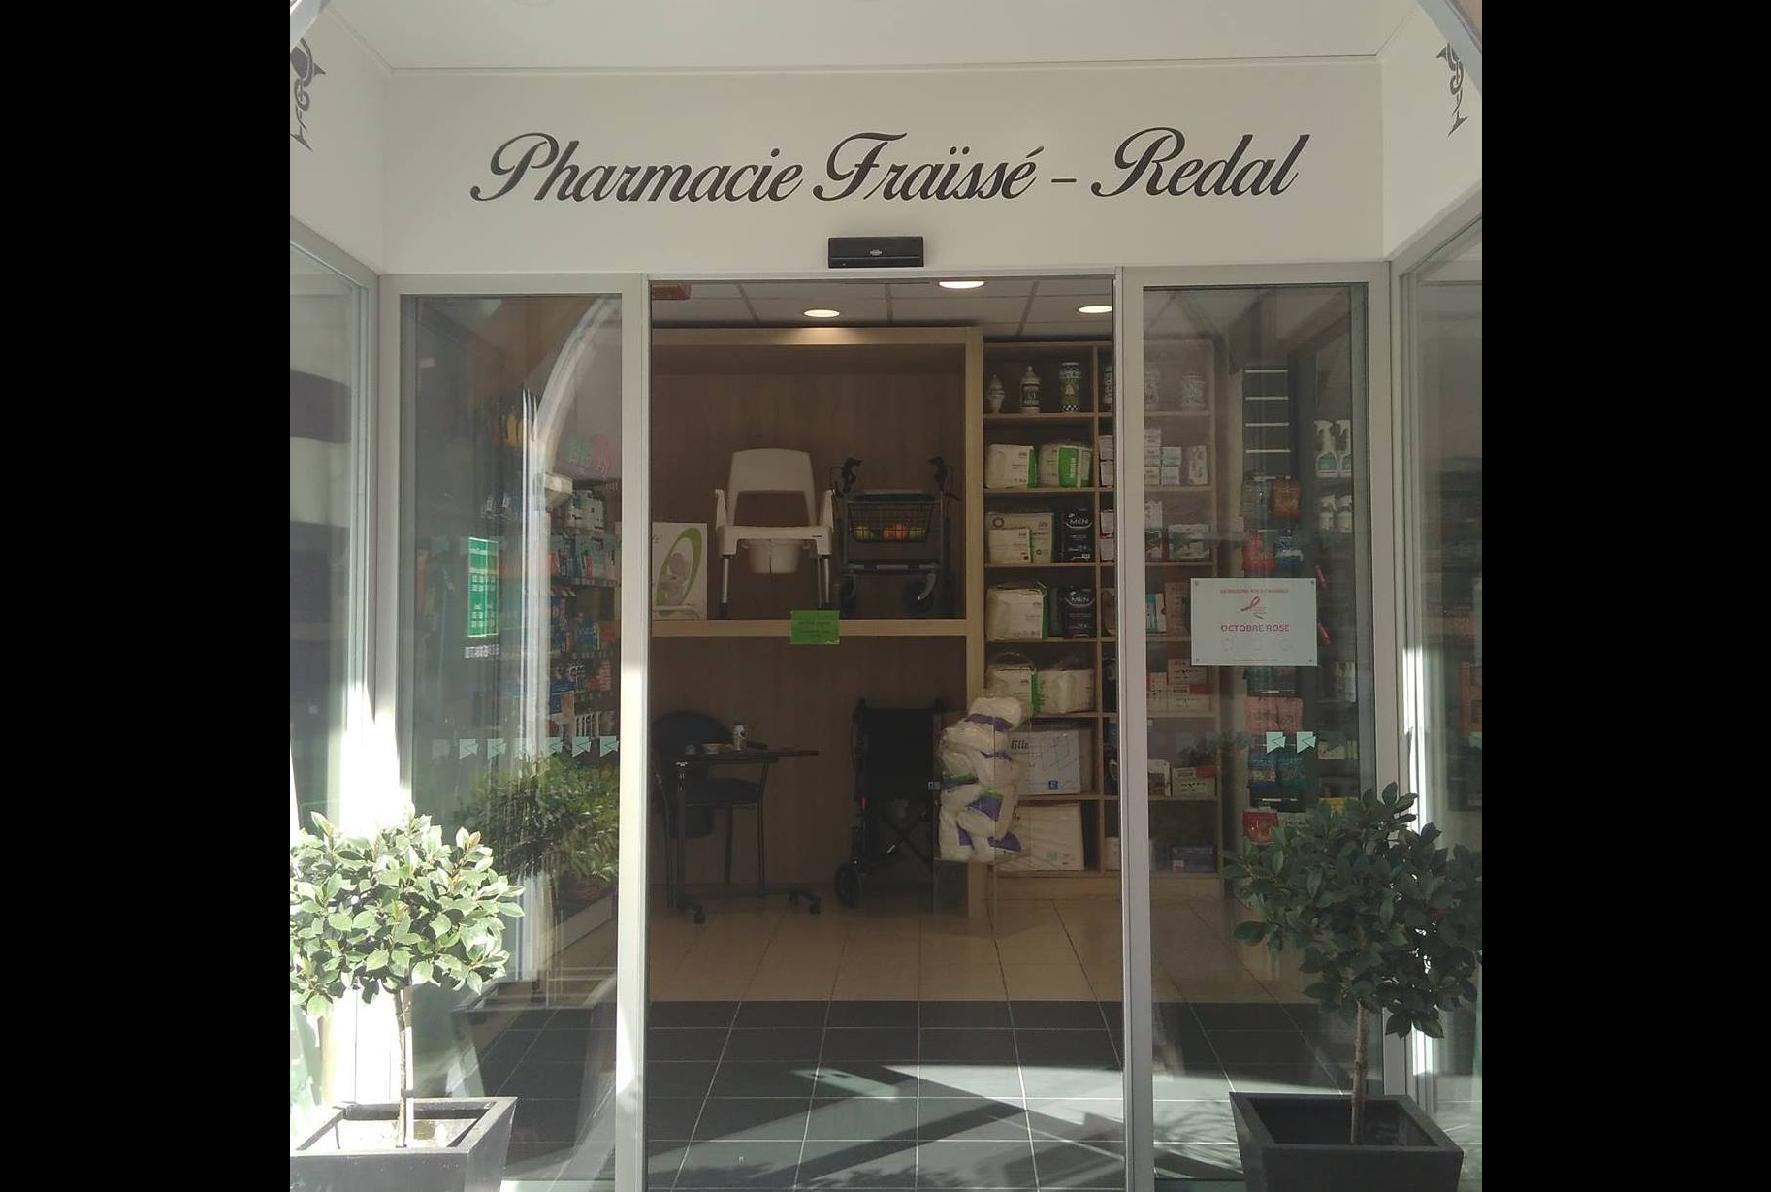 Magasin Pharmacie Fraisse-Redal - Les Cabannes (09310) Visuel 1